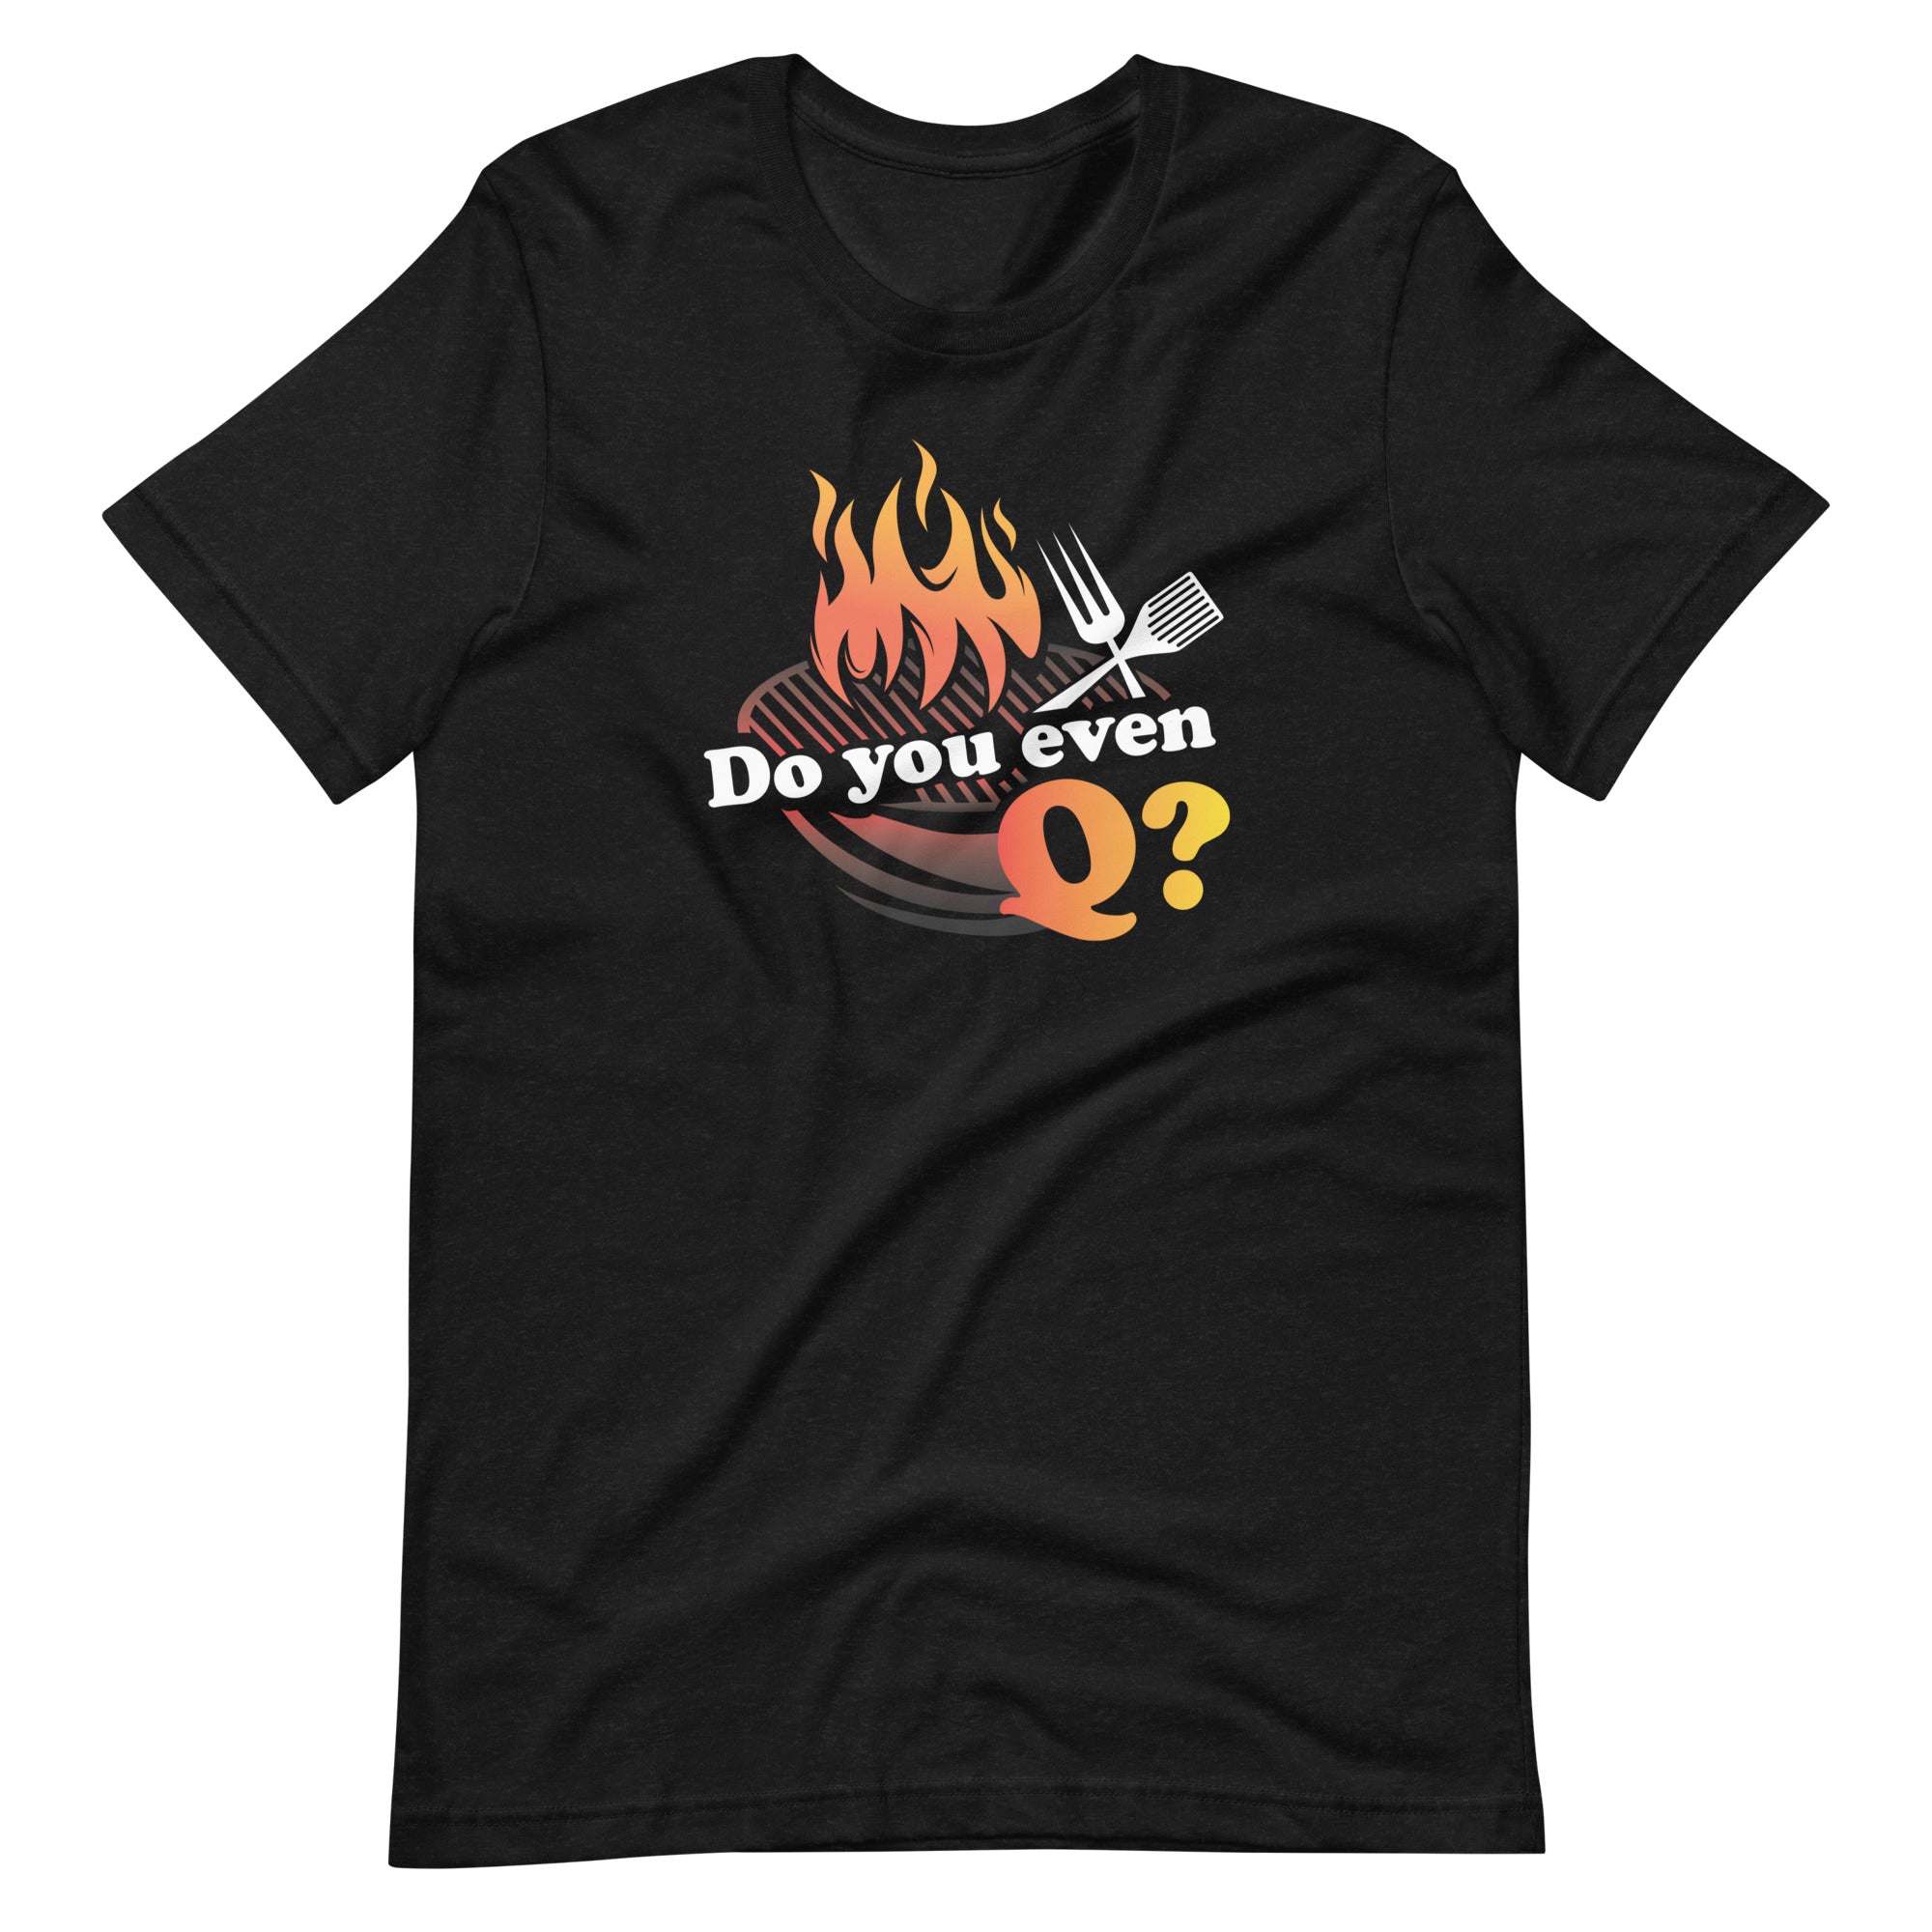 Do you even Q? T-Shirt